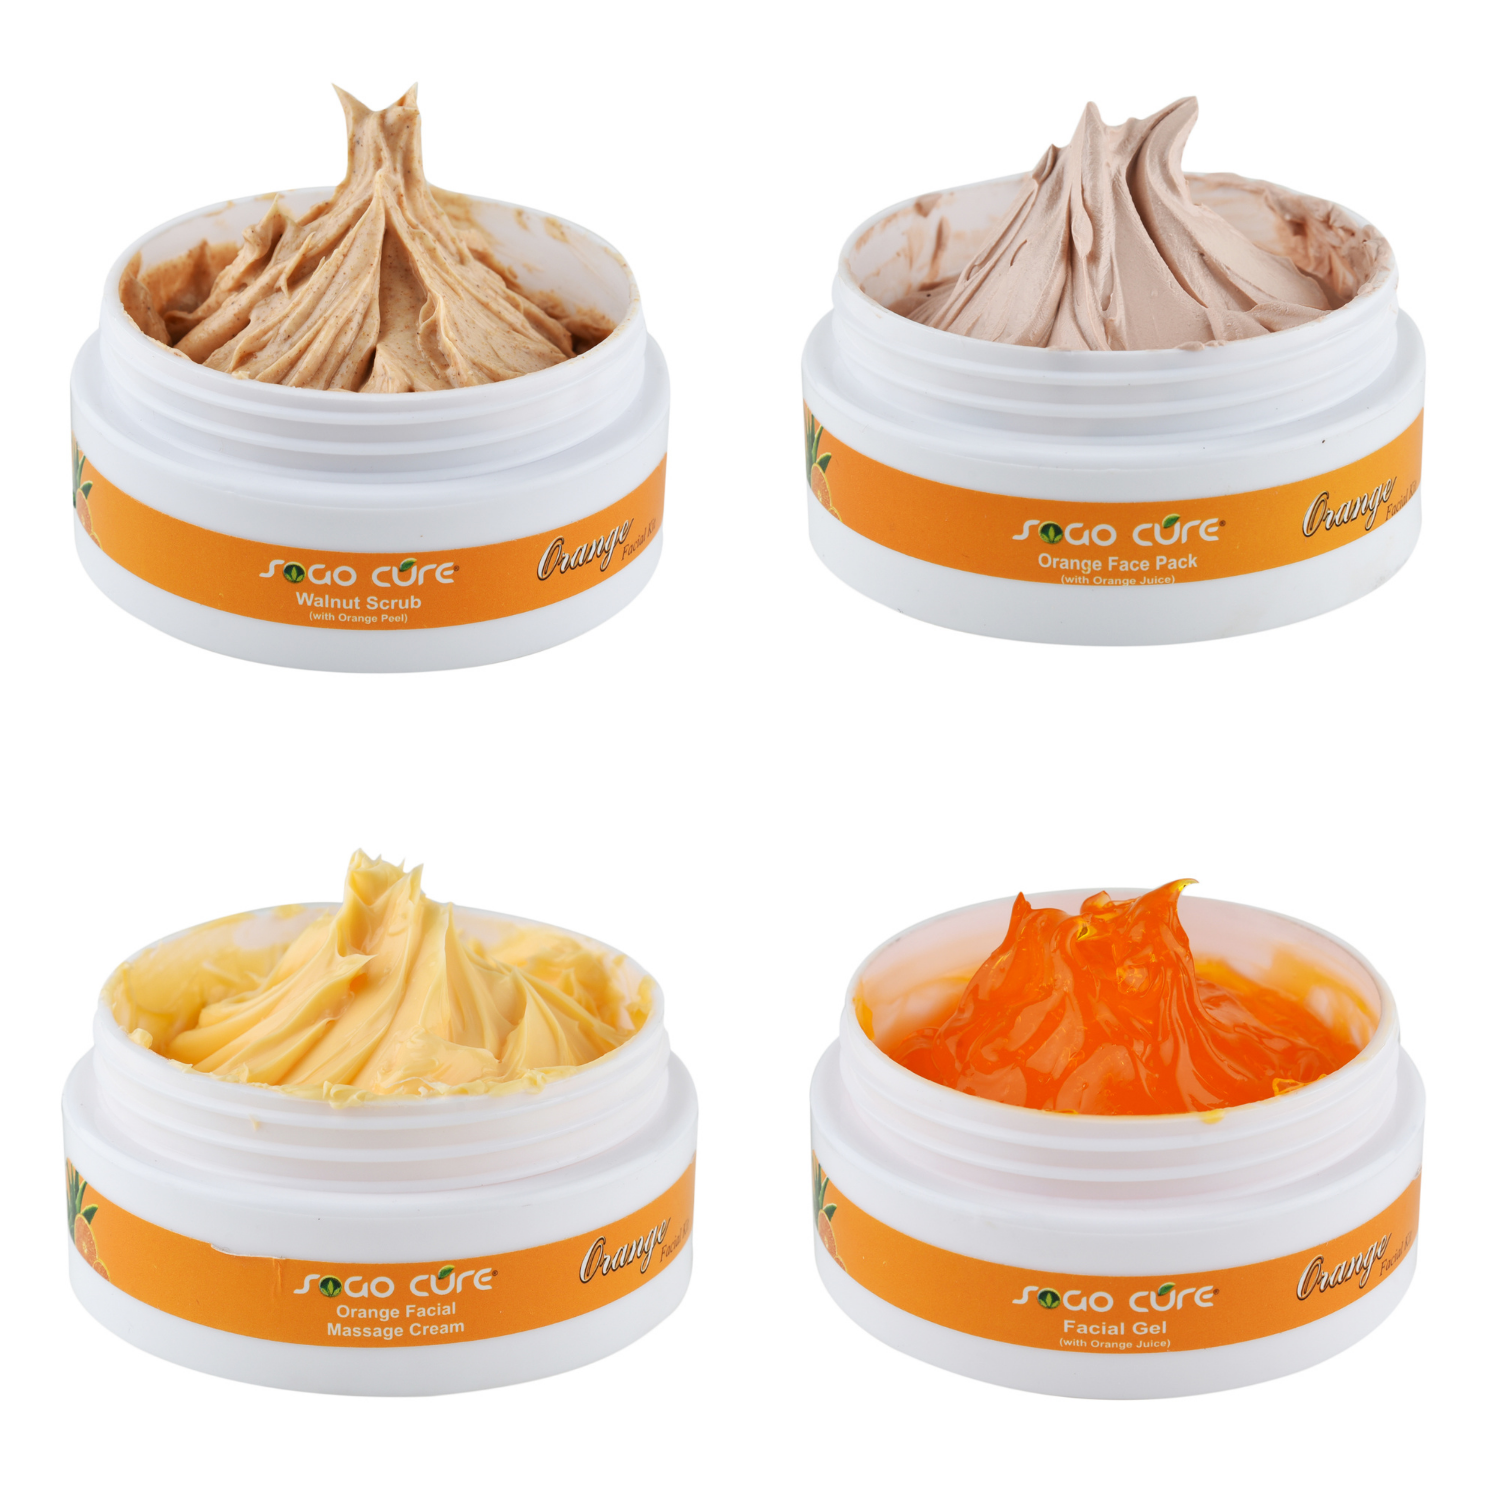 Orange Facial Kit for Glowing Skin | Detin, Anti-Blemish, & Reduce Fine Lines & Dark Circles | Facial gel, Walnut scrub, Orange facial massage cream, Orange face pack for Women & Men